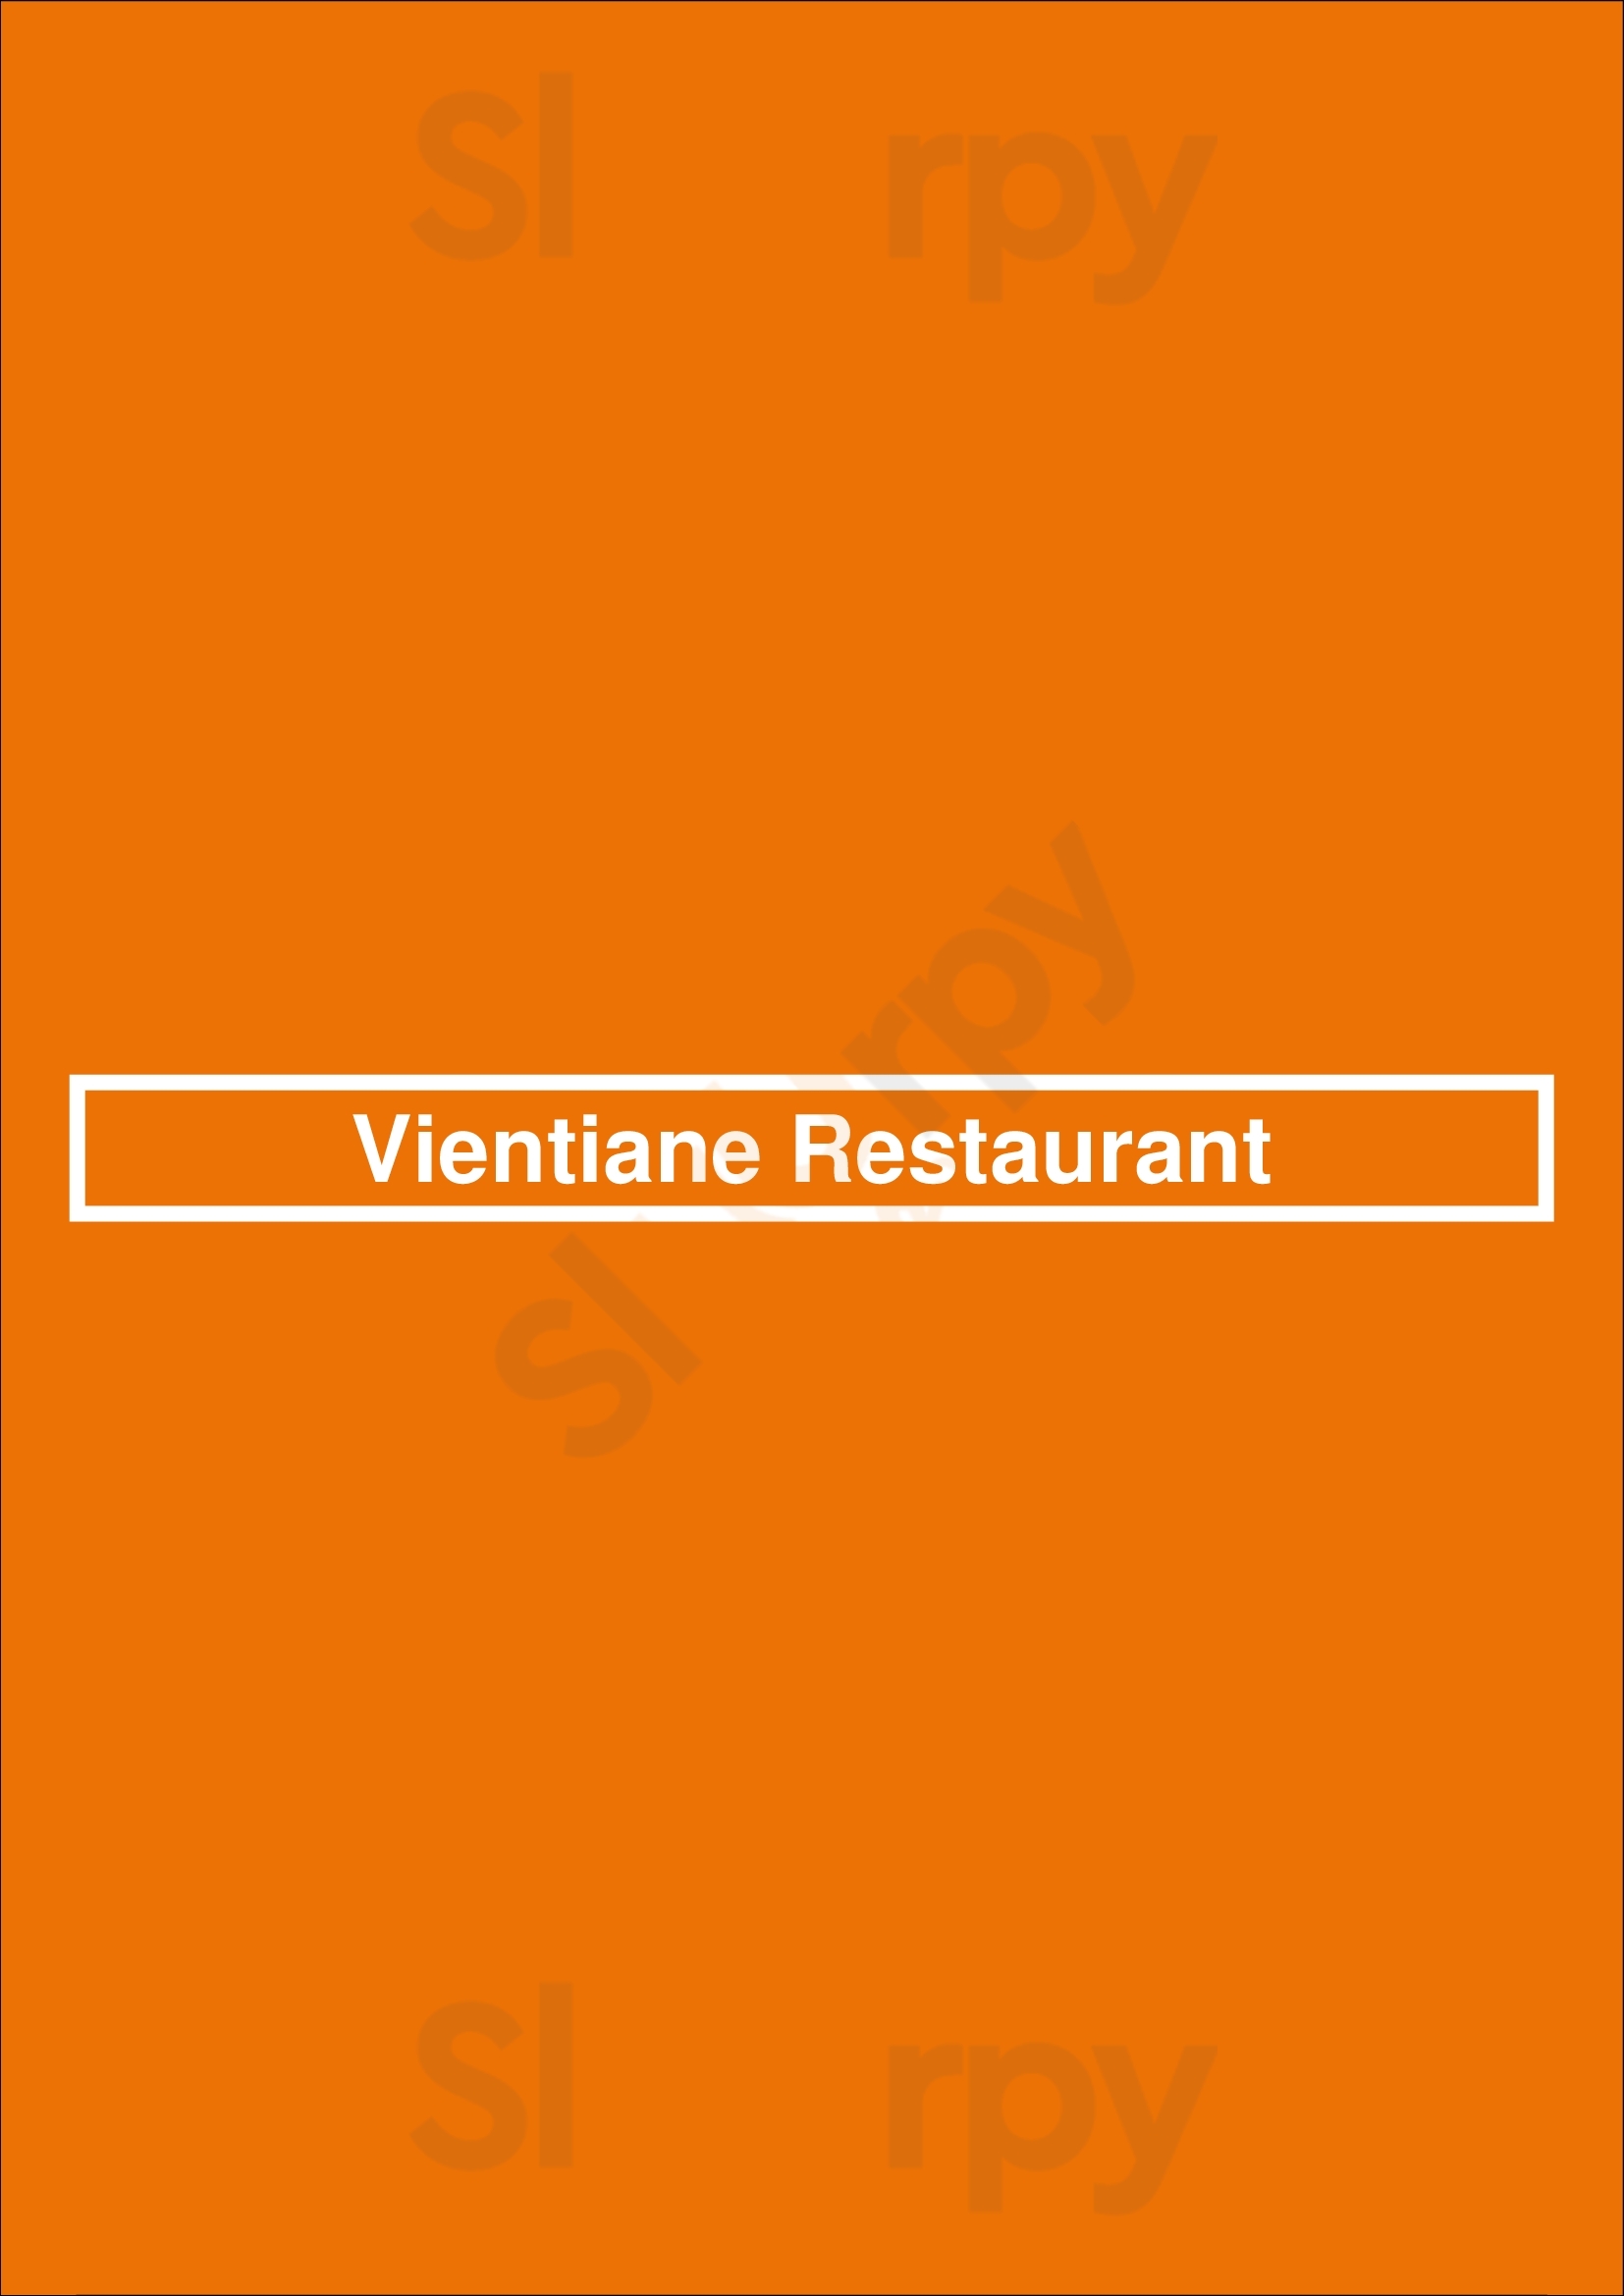 Vientiane Restaurant Winnipeg Menu - 1